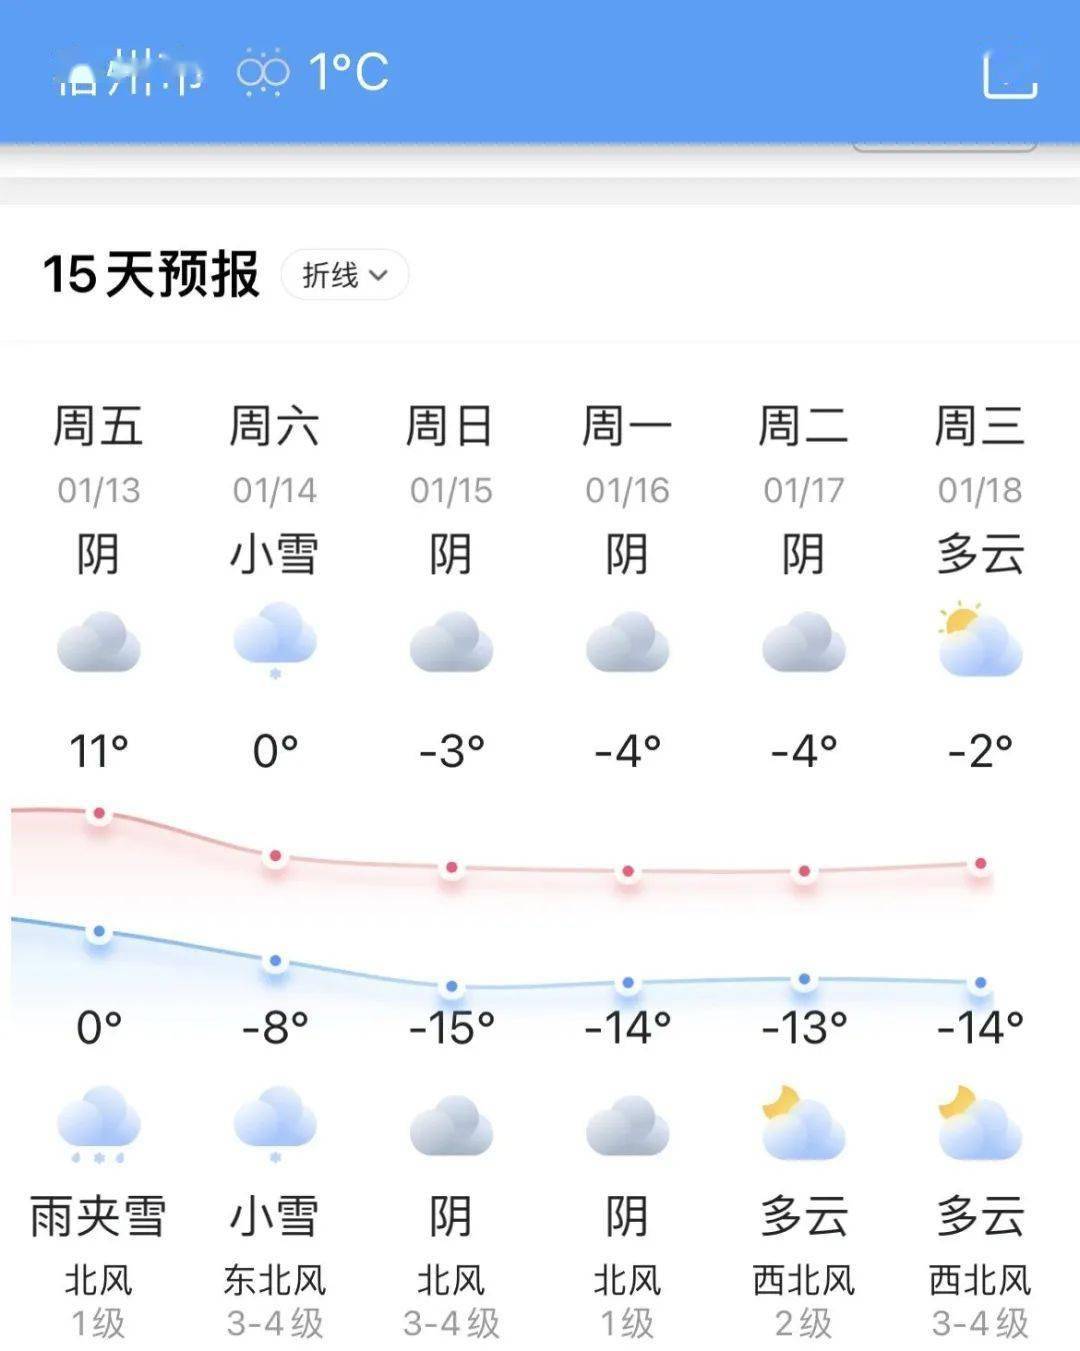 华为木兰手机是真是假
:泗县将至-15℃，还有极寒天气？是真是假？